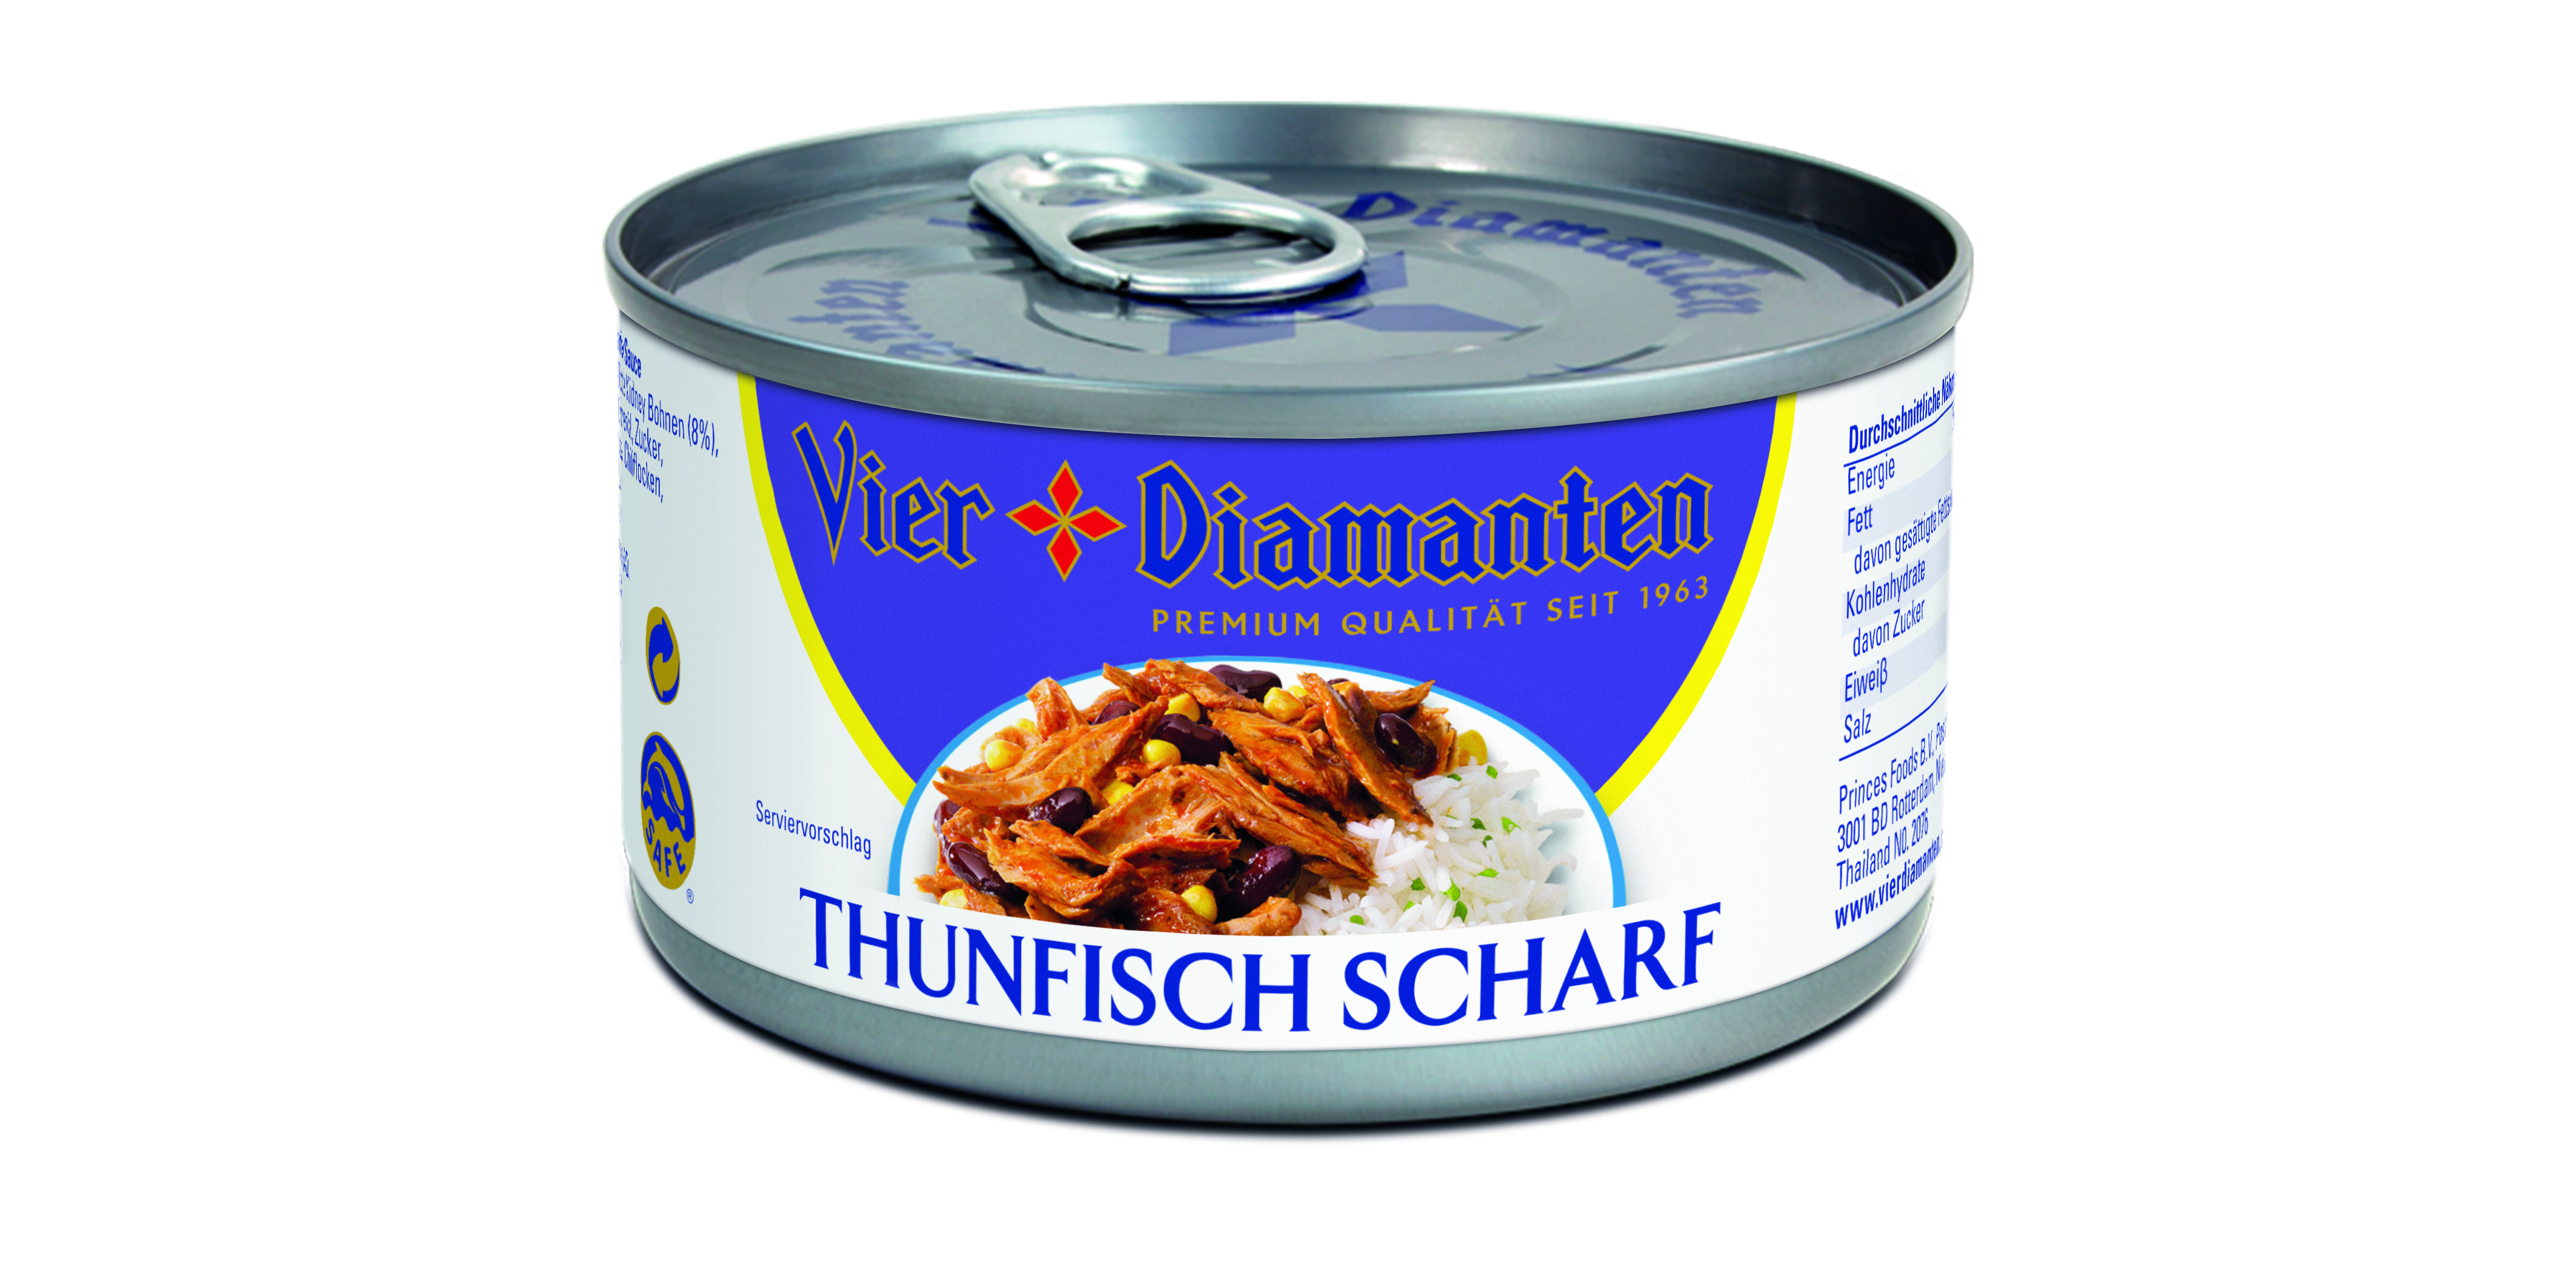 Thunfisch VD in Dressing Scharf 185g - JPG